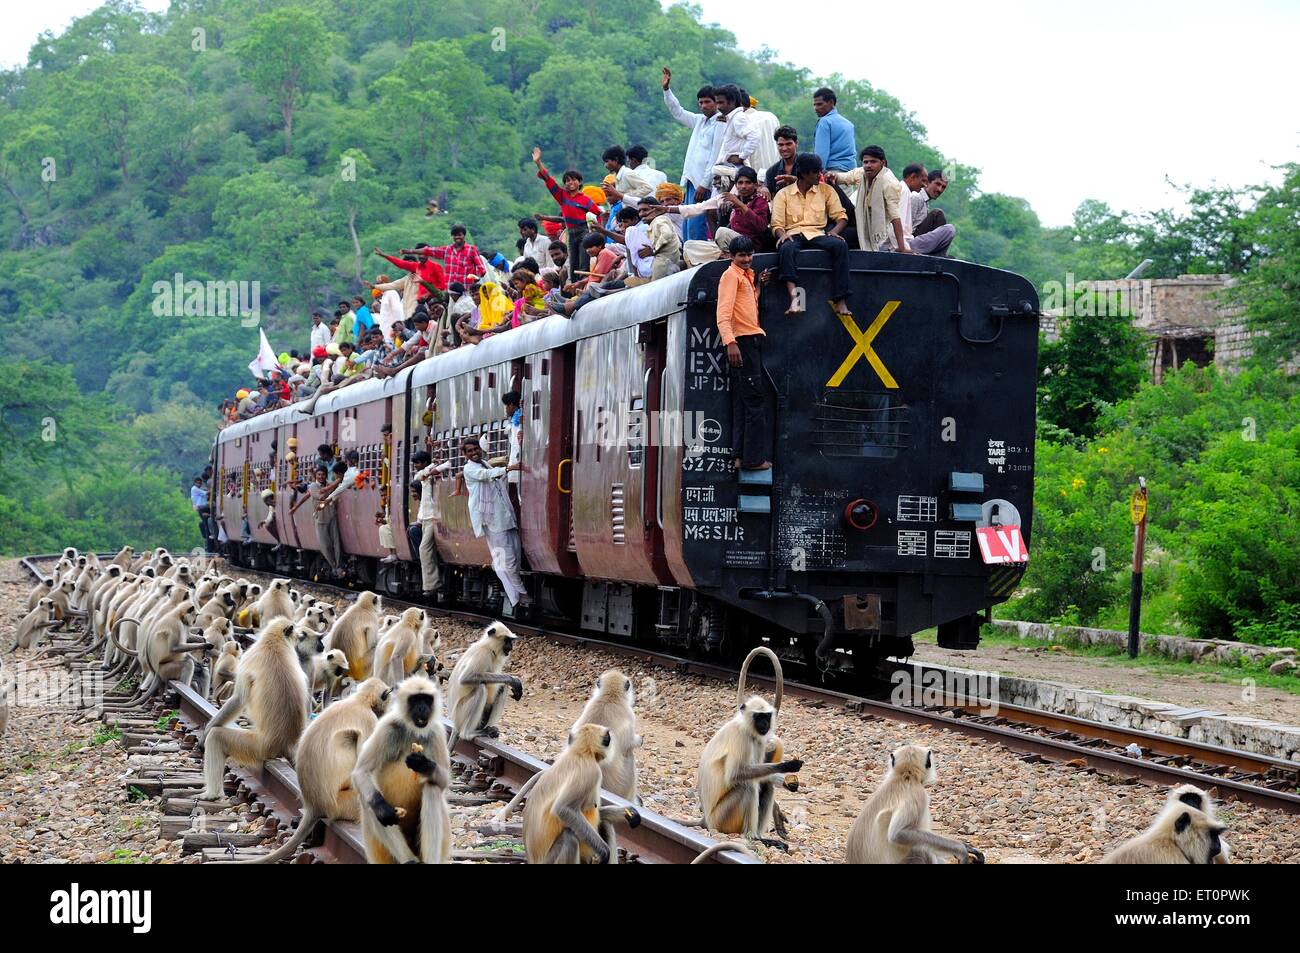 Menschen, die die Gefahr während der Fahrt auf dem Dach des Zuges viele Affen sitzen auf dem richtigen Weg; Rajasthan; Indien Stockfoto